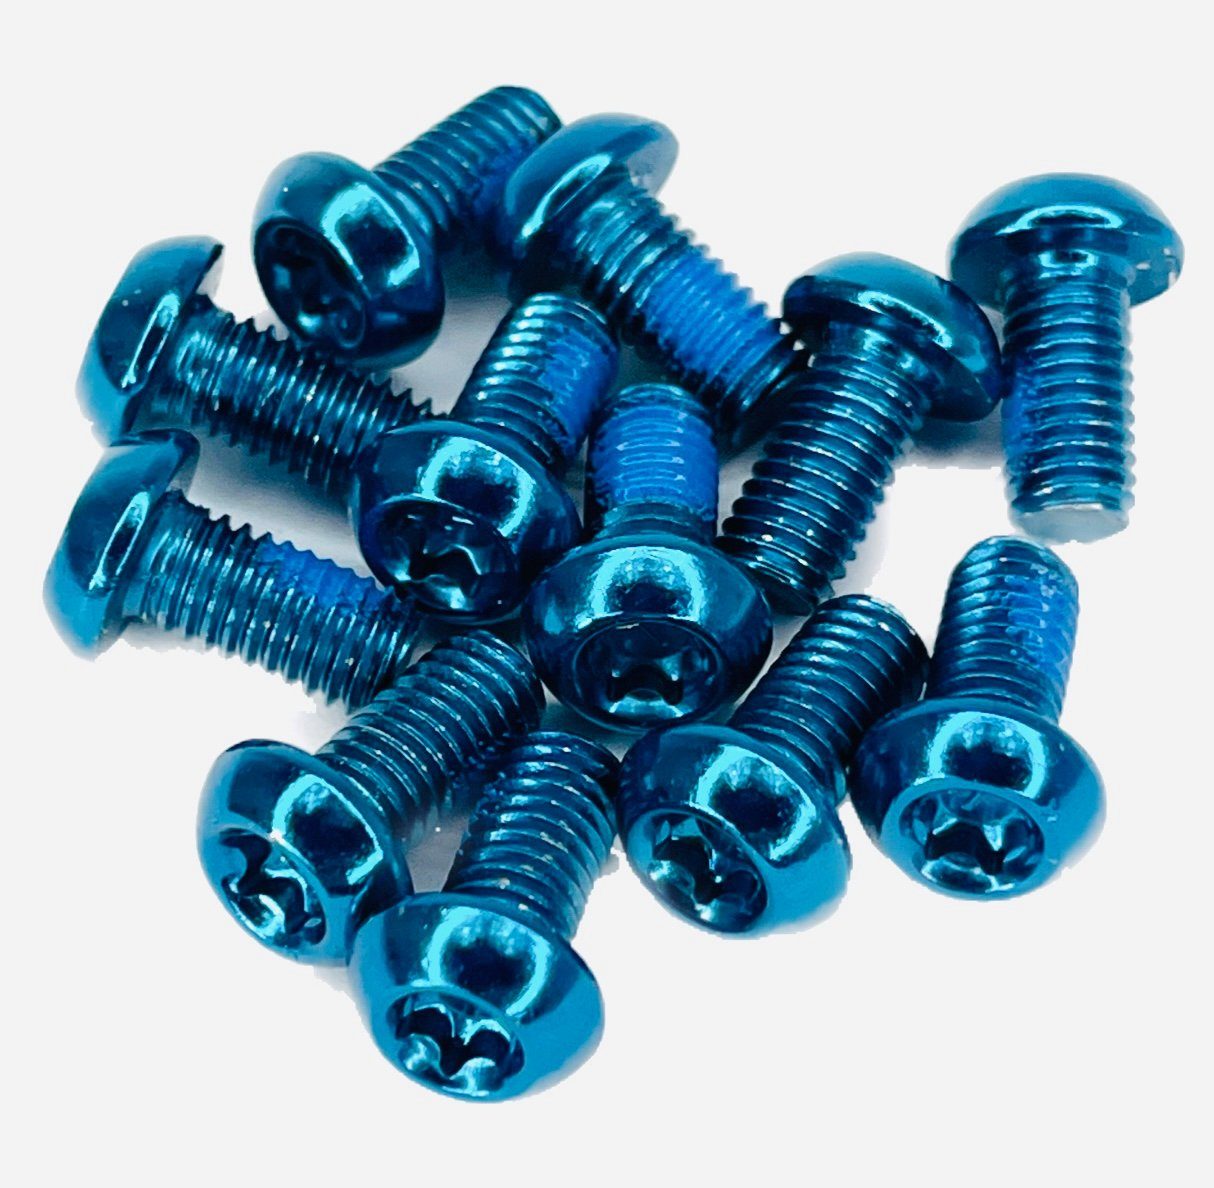 Reverse Scheibenbremse Reverse M5x10 Torx Bremsscheiben Befestigungsschrauben (12er Set) blau